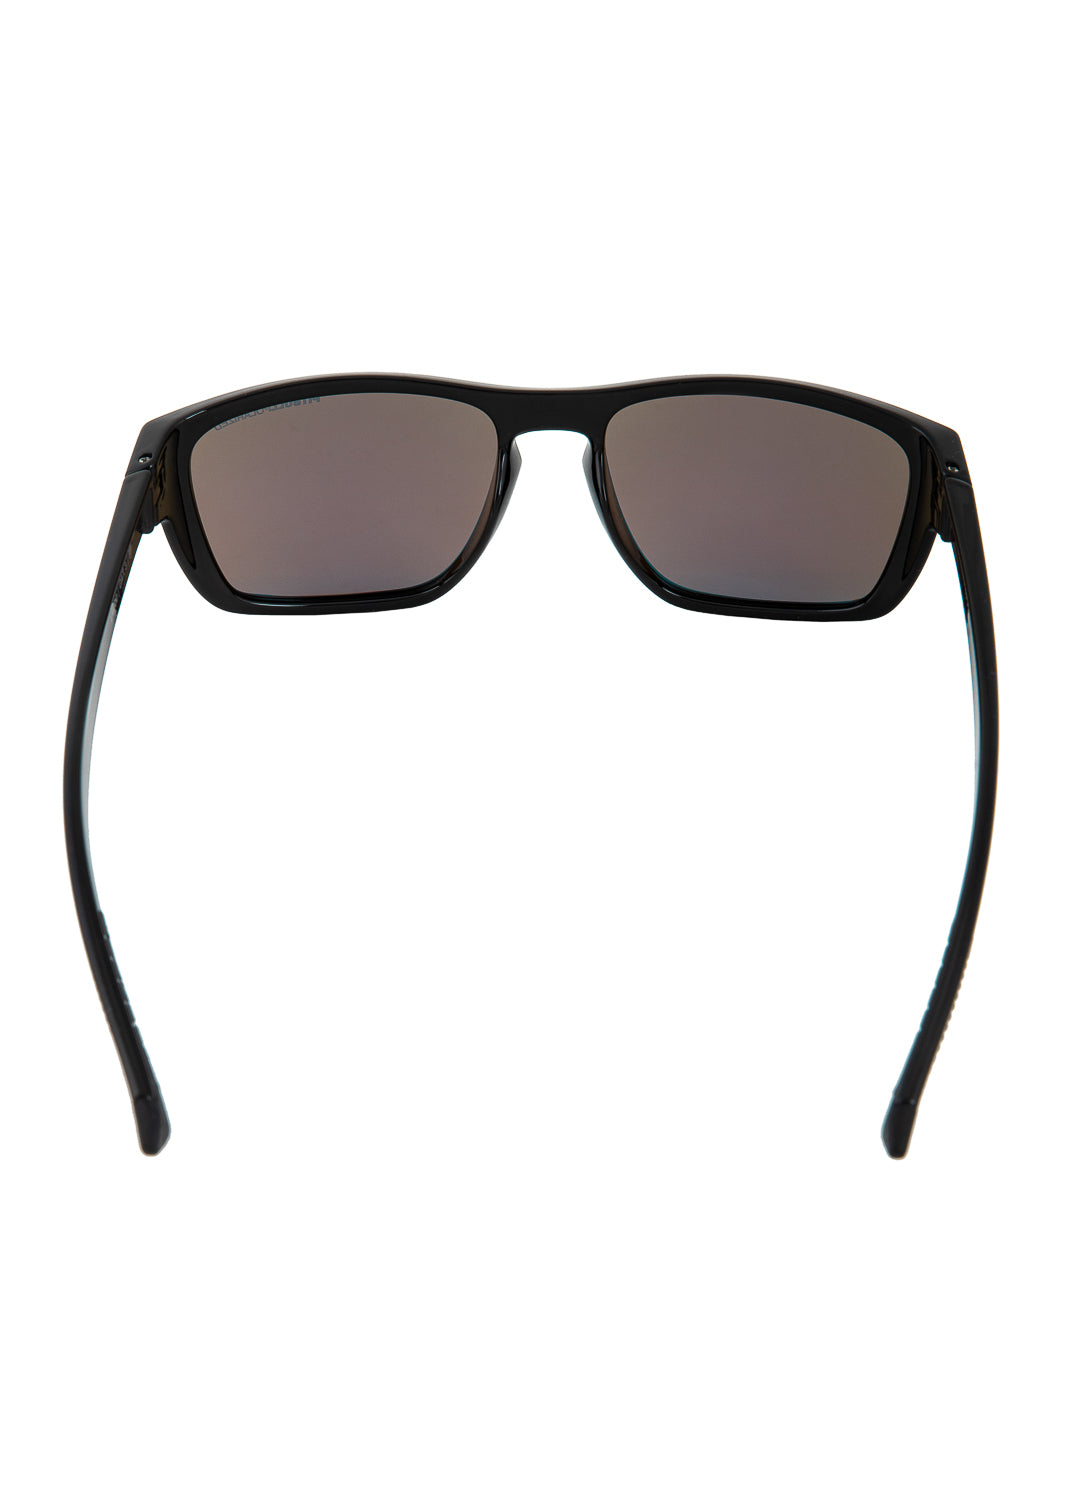 Sunglasses Black/Blue MARZO.